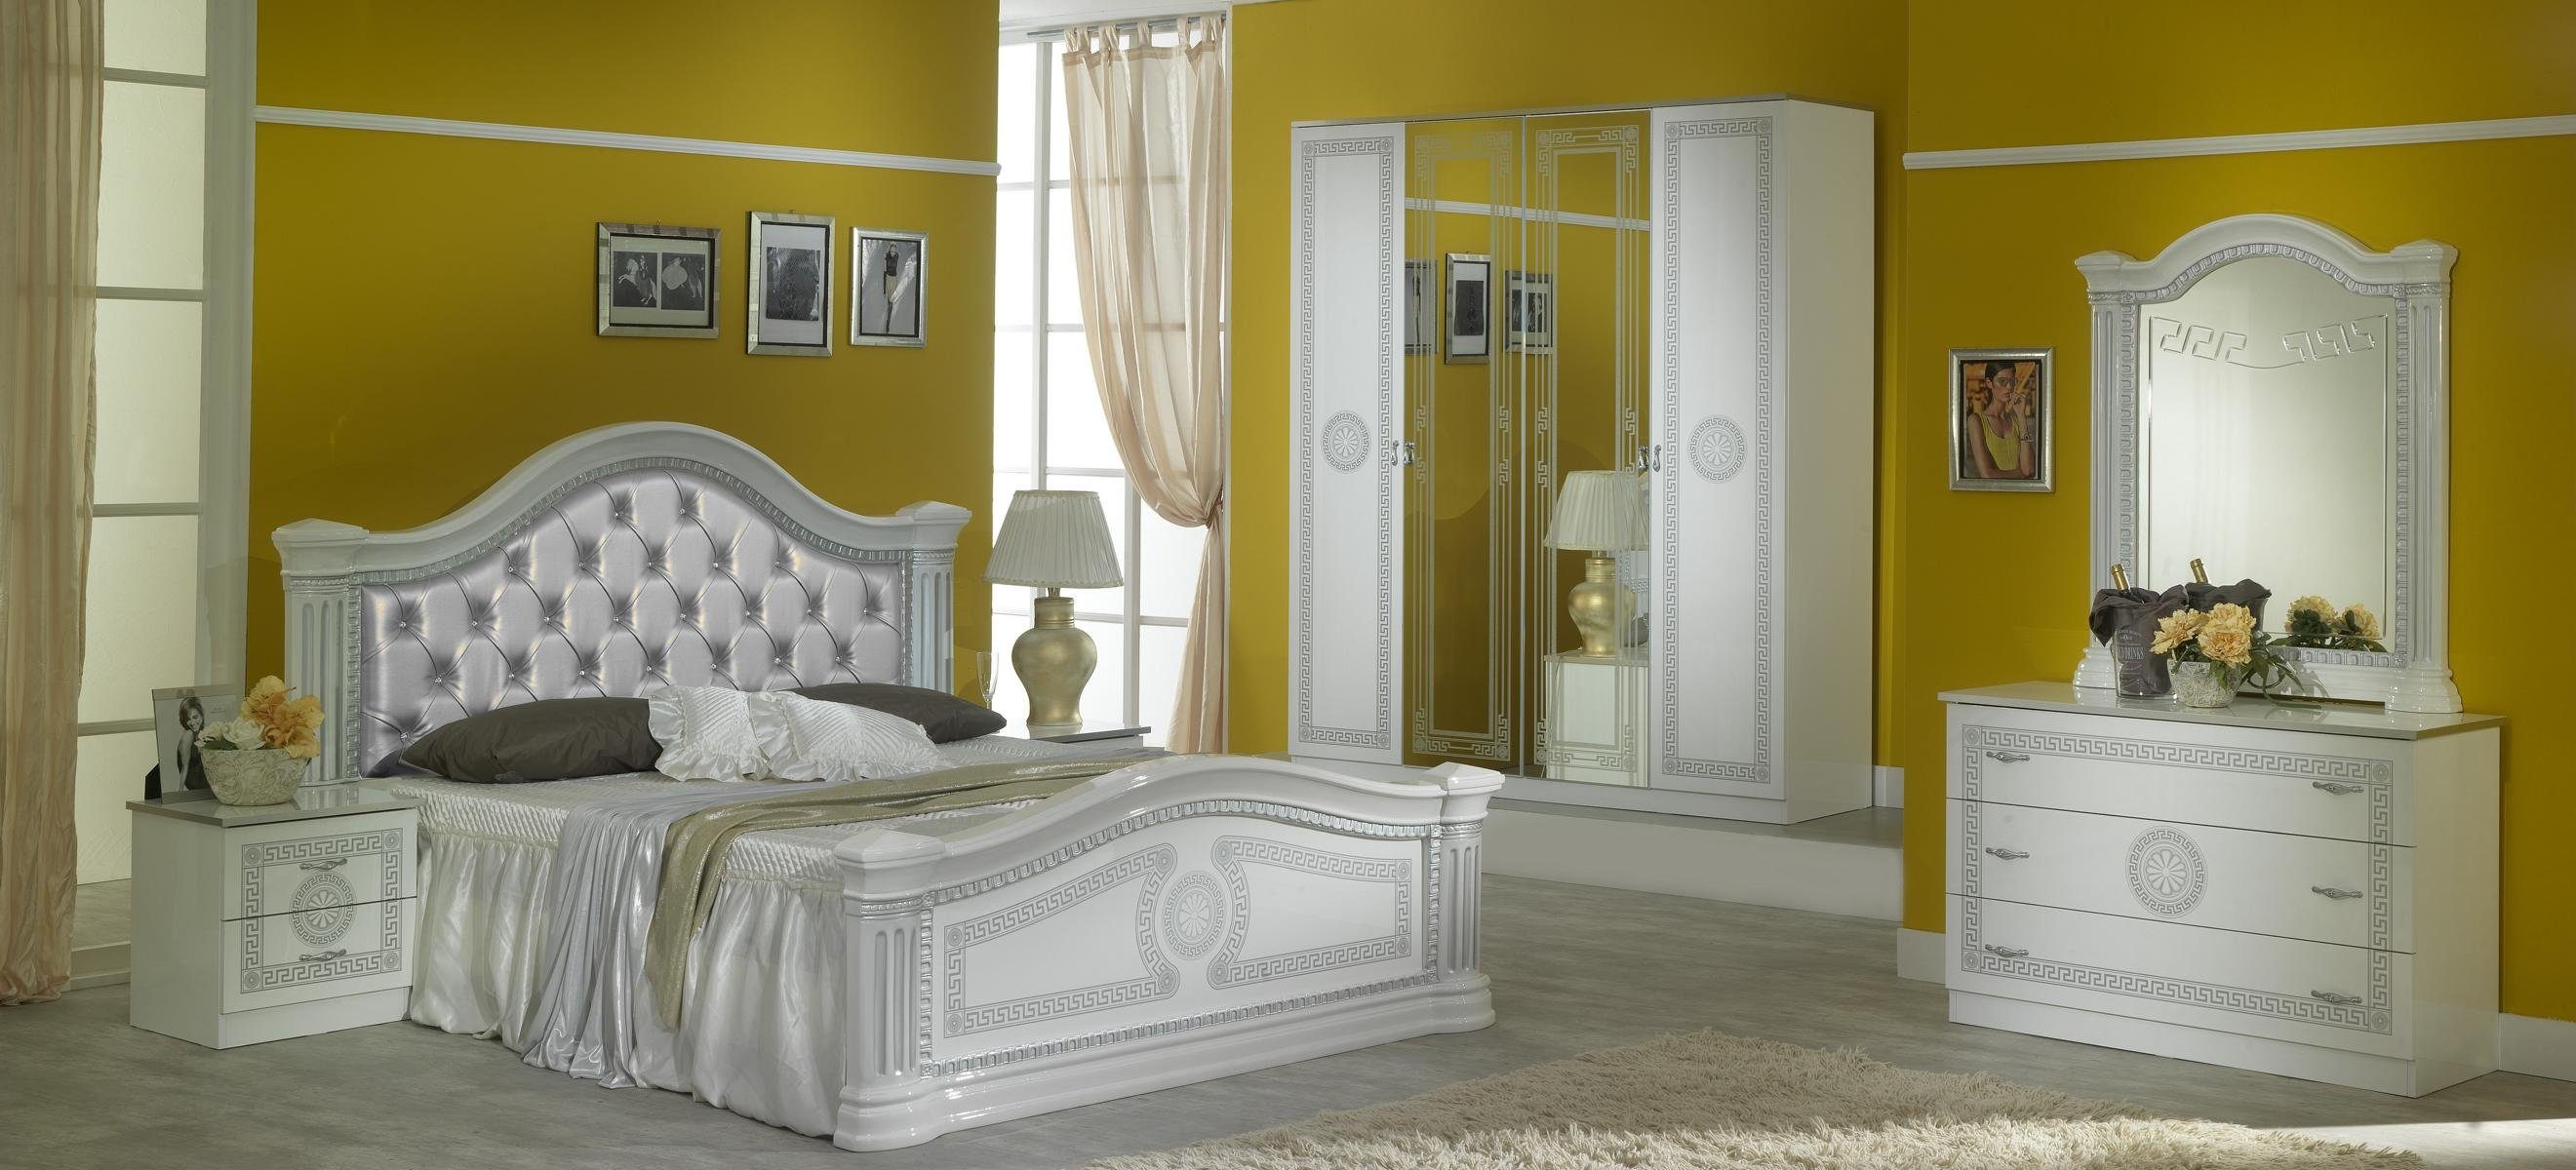 JVmoebel Schlafzimmer-Set 6 tlg Komplettes Schlafzimmer Set Design Modern Luxus Bett